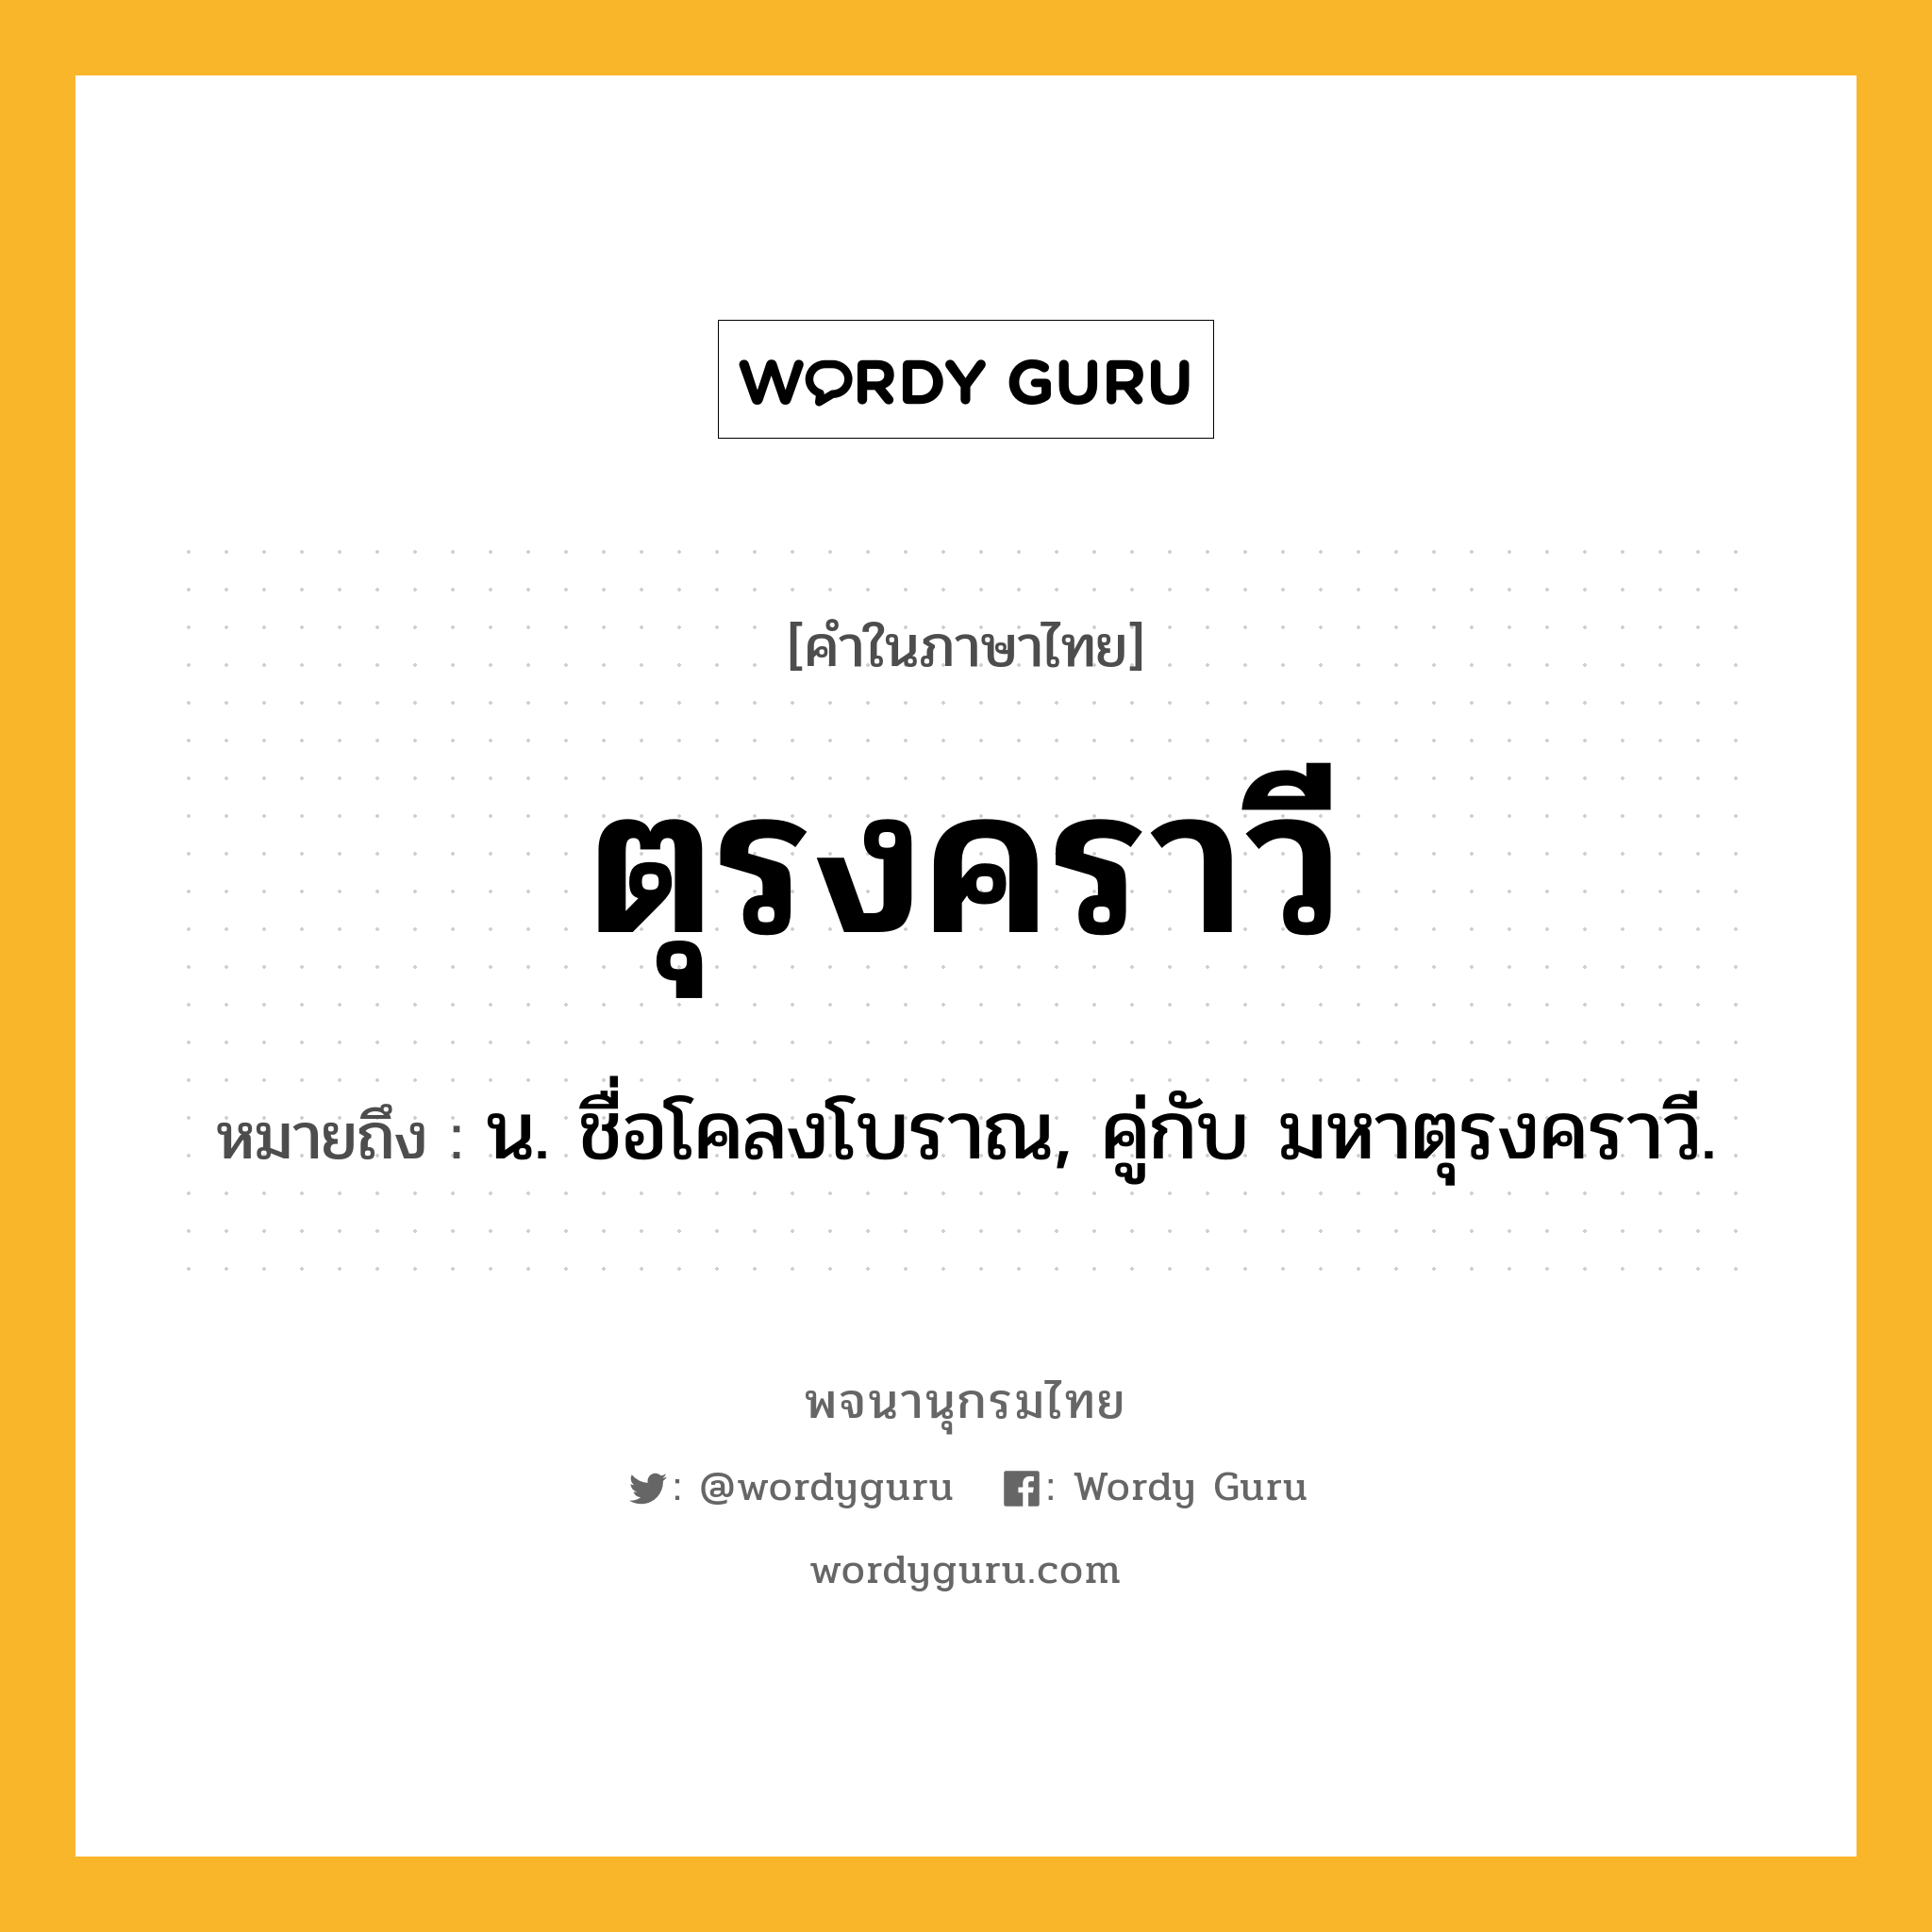 ตุรงคราวี ความหมาย หมายถึงอะไร?, คำในภาษาไทย ตุรงคราวี หมายถึง น. ชื่อโคลงโบราณ, คู่กับ มหาตุรงคราวี.